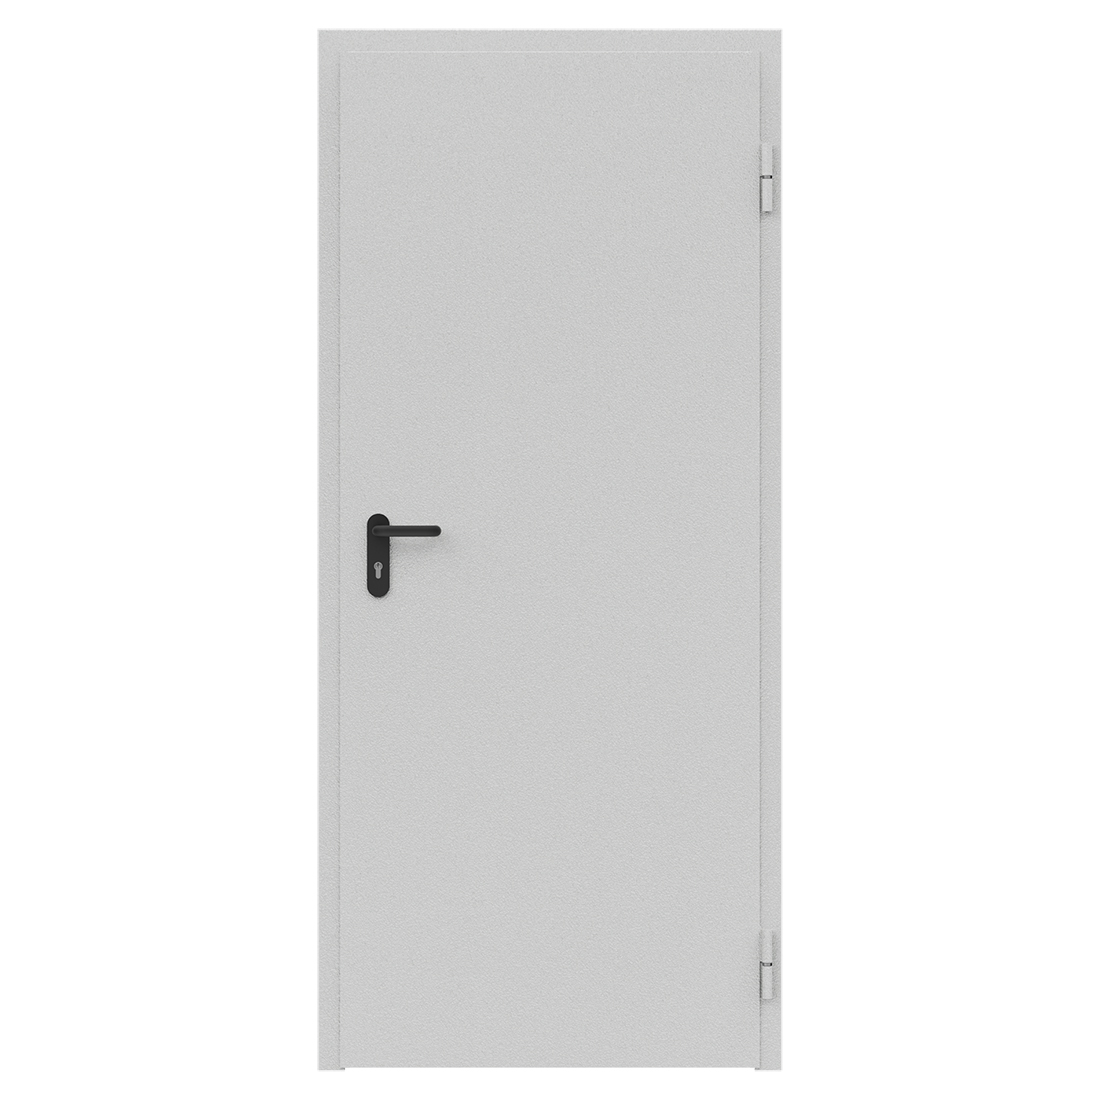 Дверь противопожарная металлическая ДПМ-Пульс-01/30К (EI 30) сплошная, угловая коробка (850х2075), без порога, правая, RAL7035